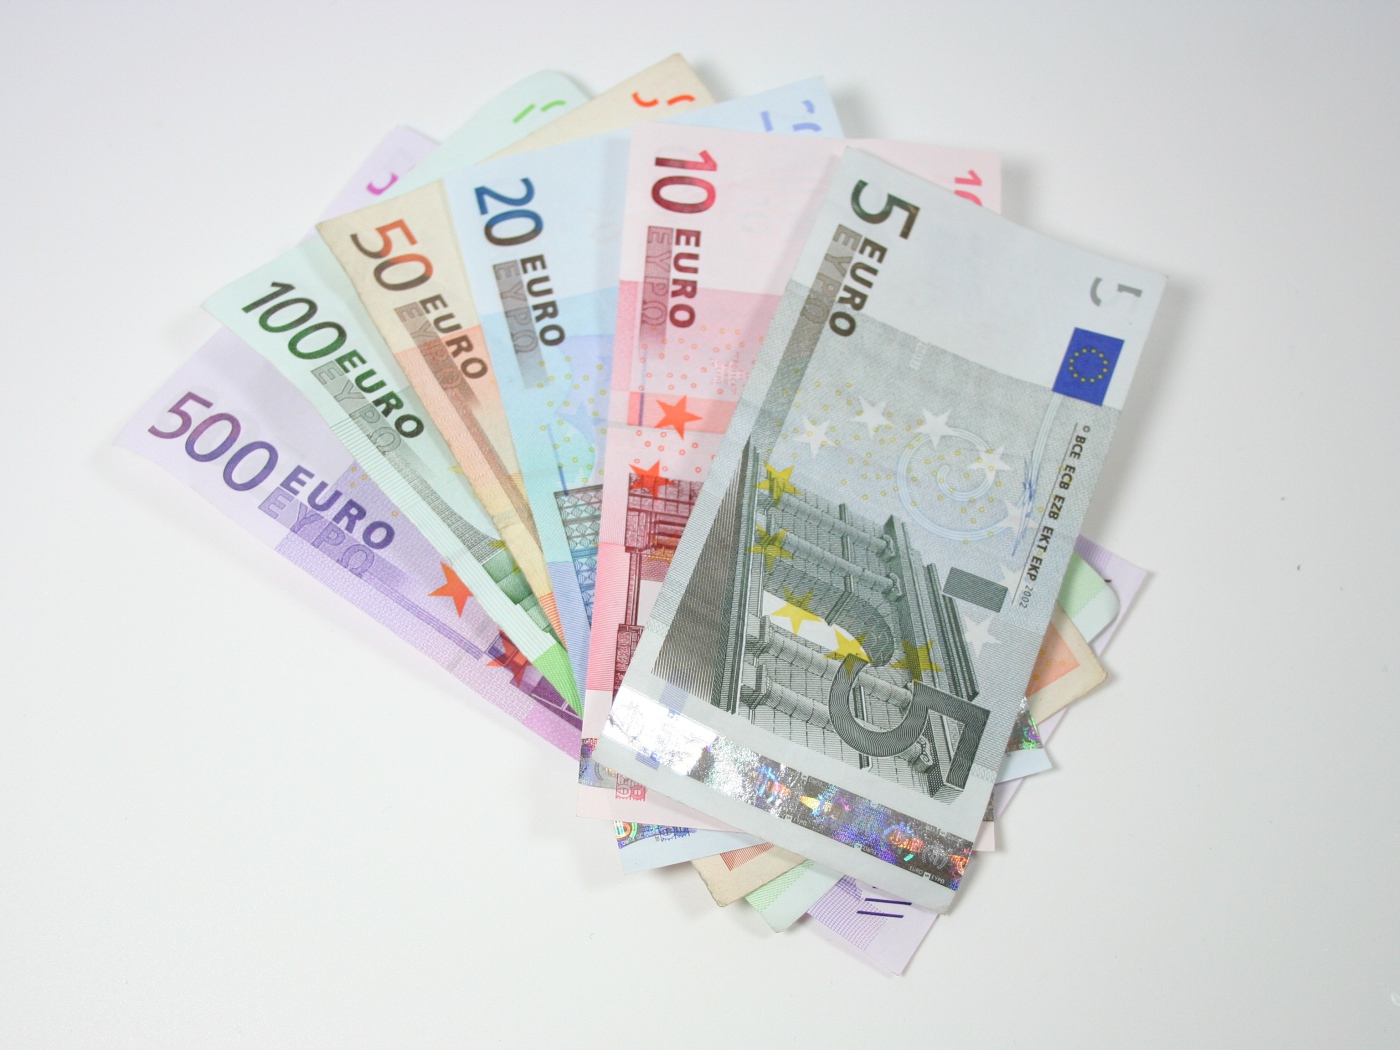 Купюры евро разным номиналом на сером фоне